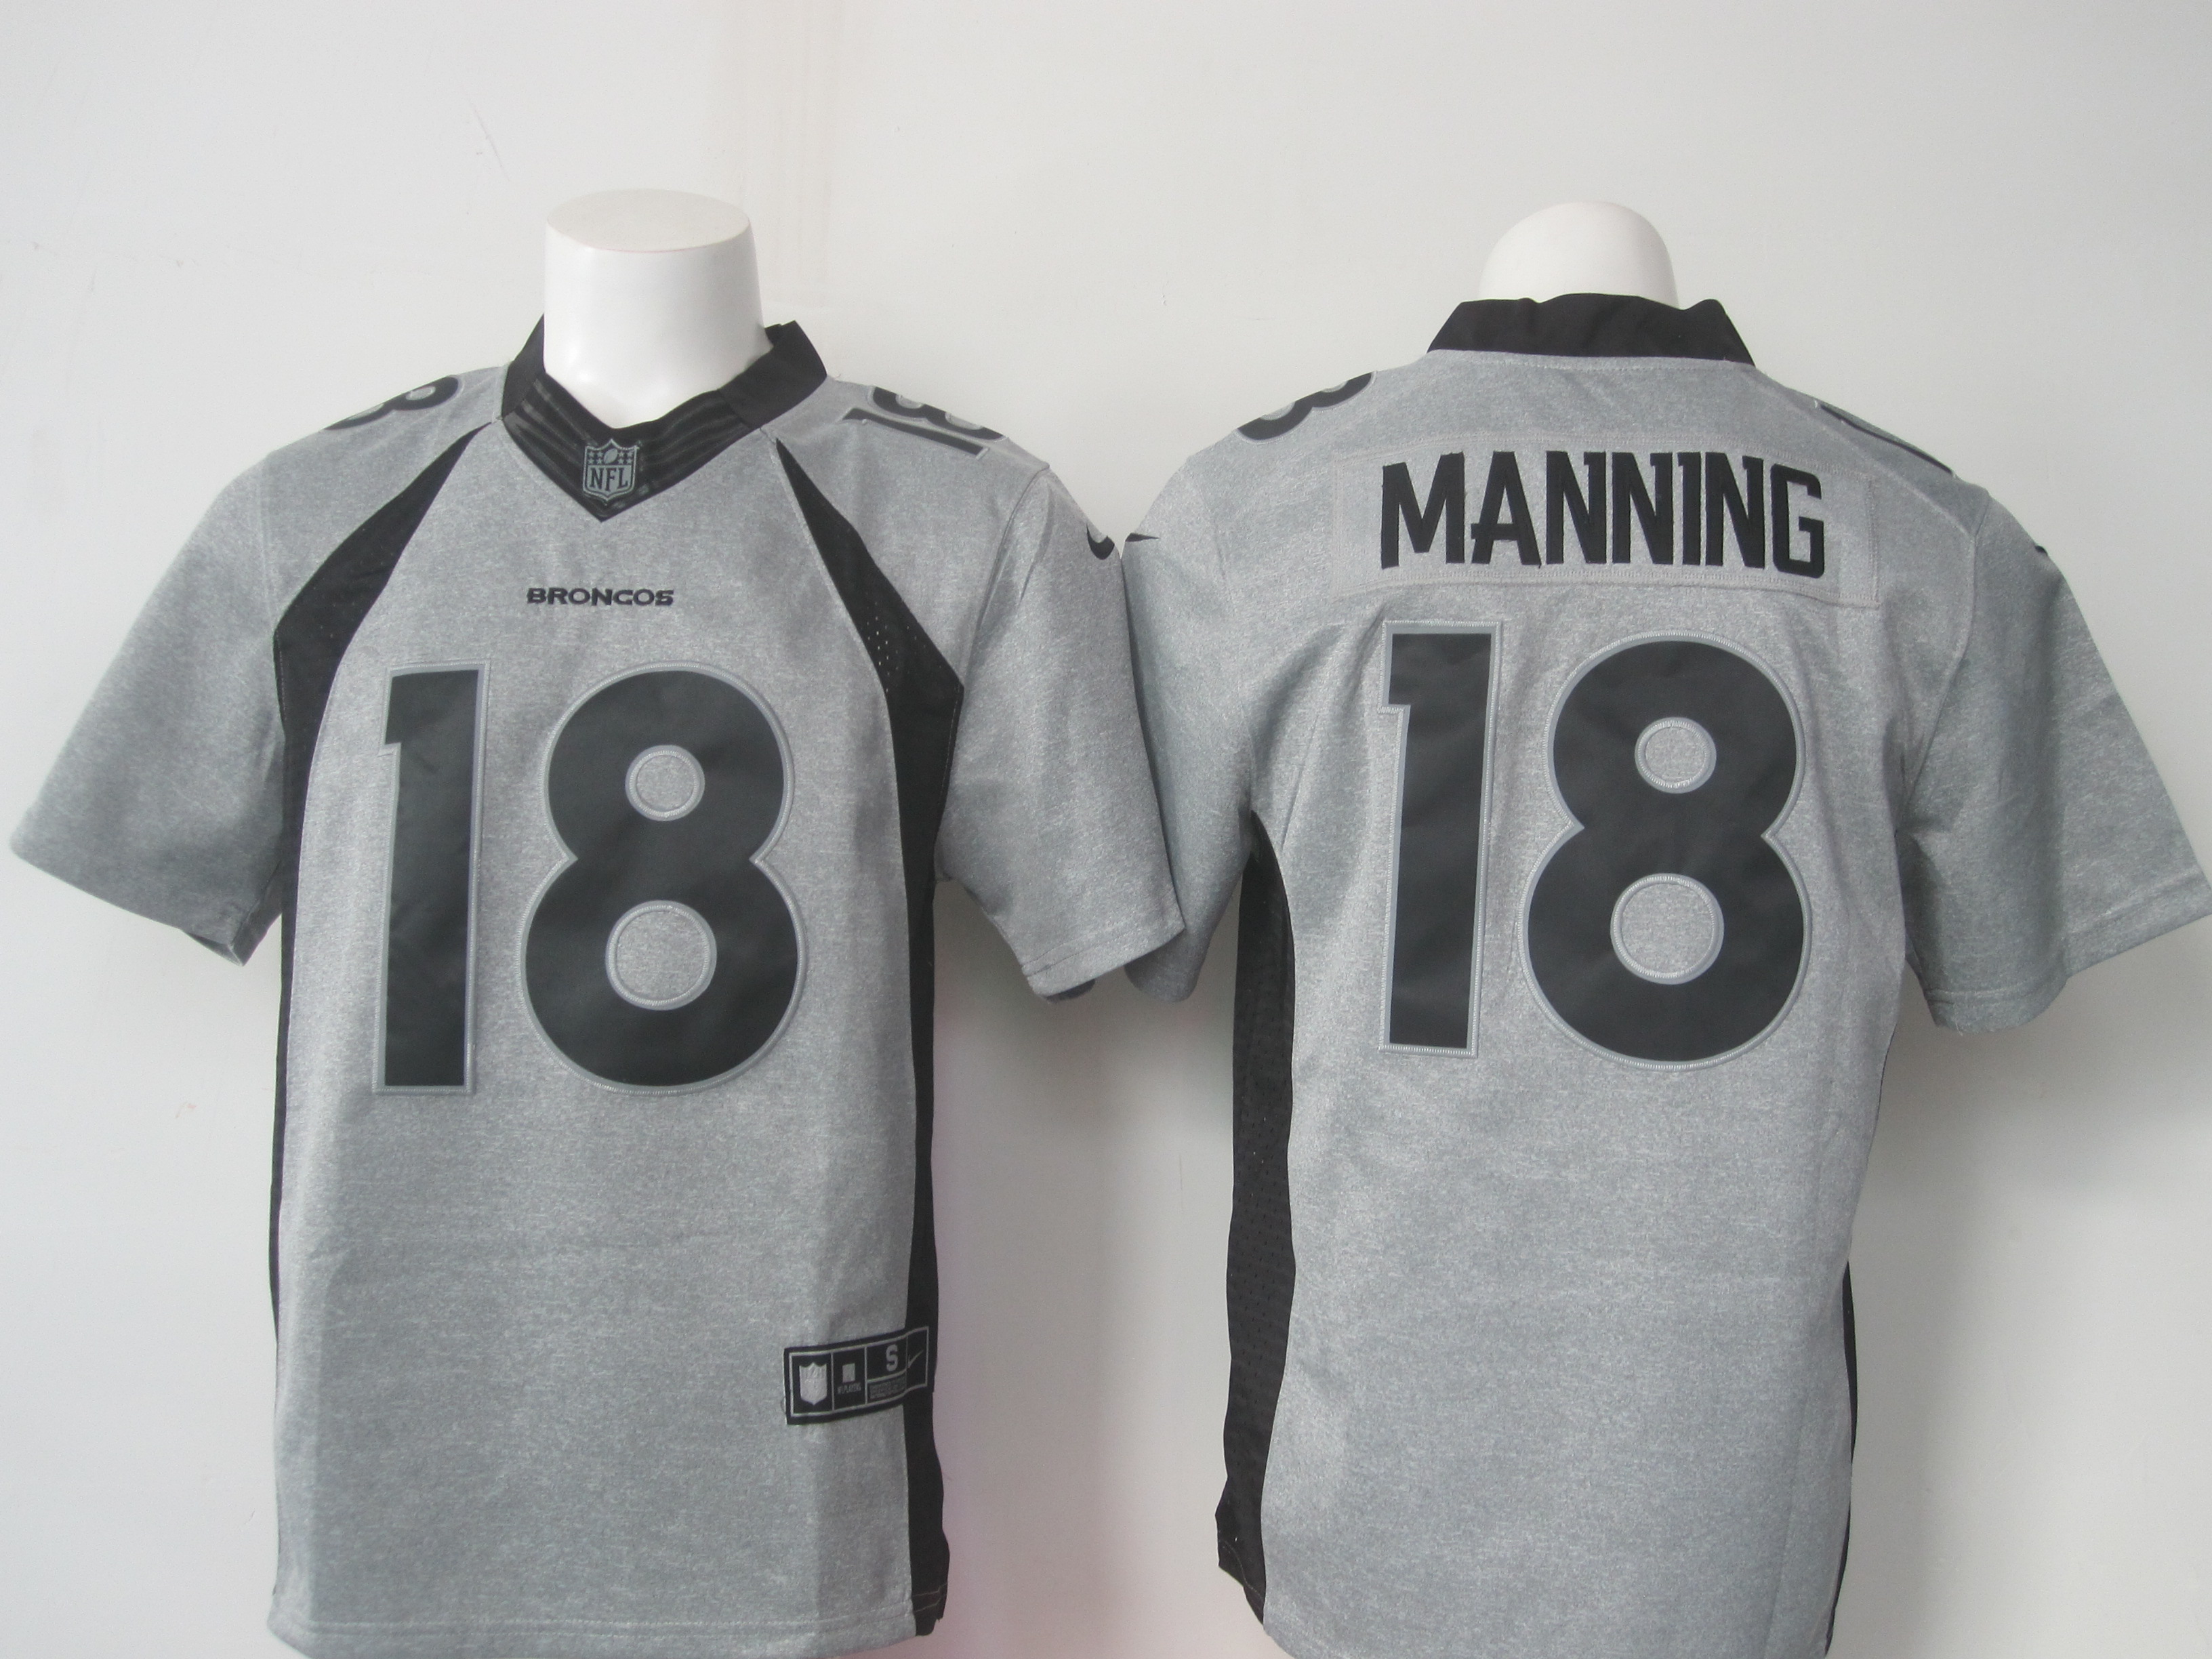 Nike Broncos 18 Peyton Manning Grey Gridiron Grey Limited Jersey